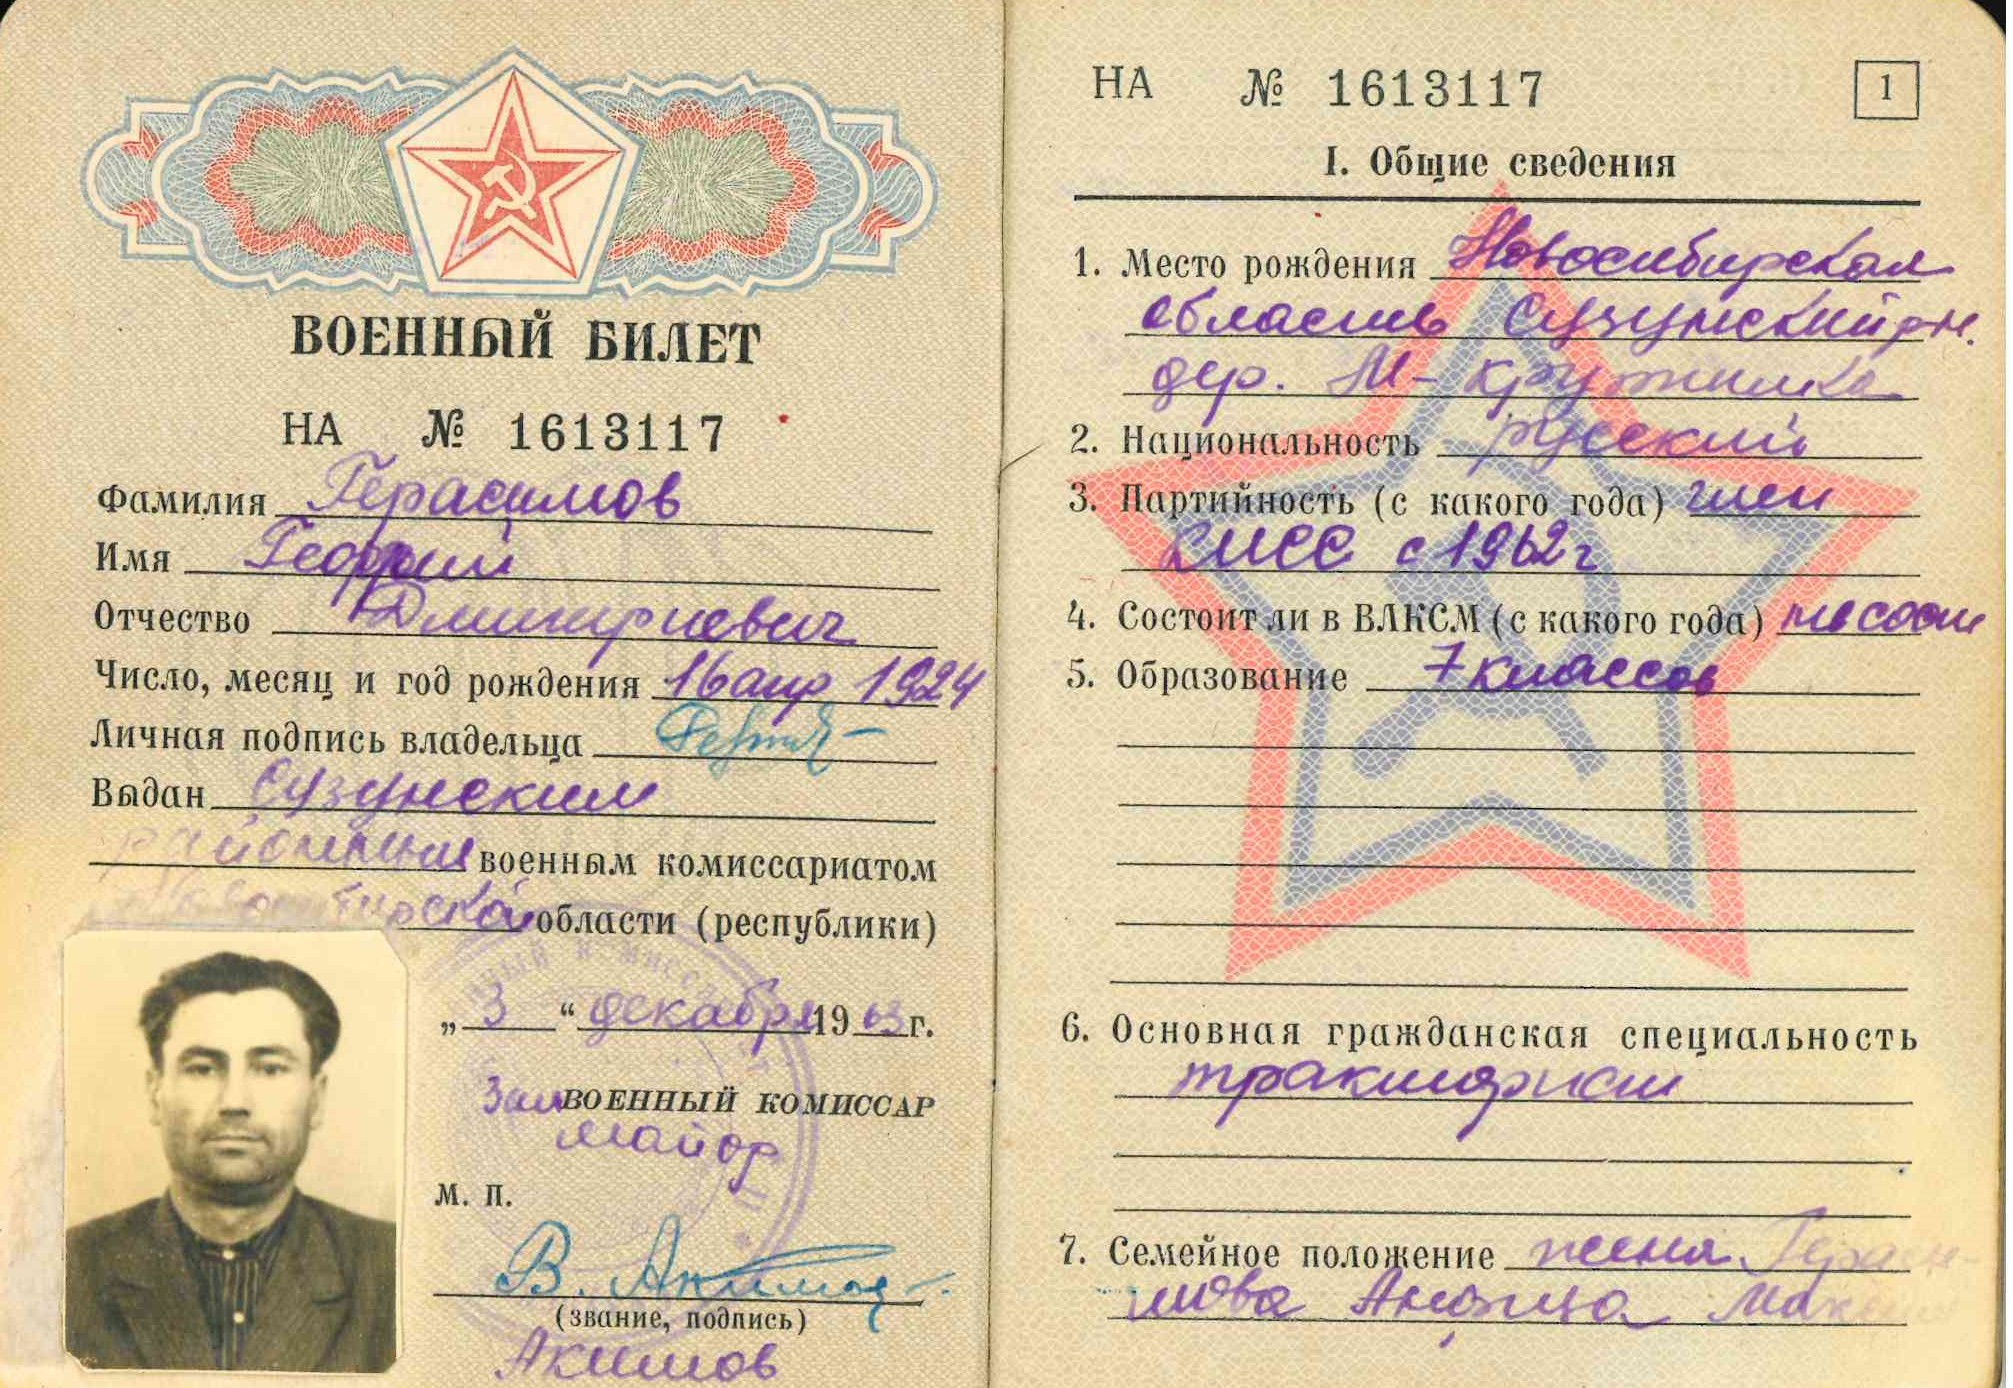 Герасимов Г.Д.. военный билет.jpg